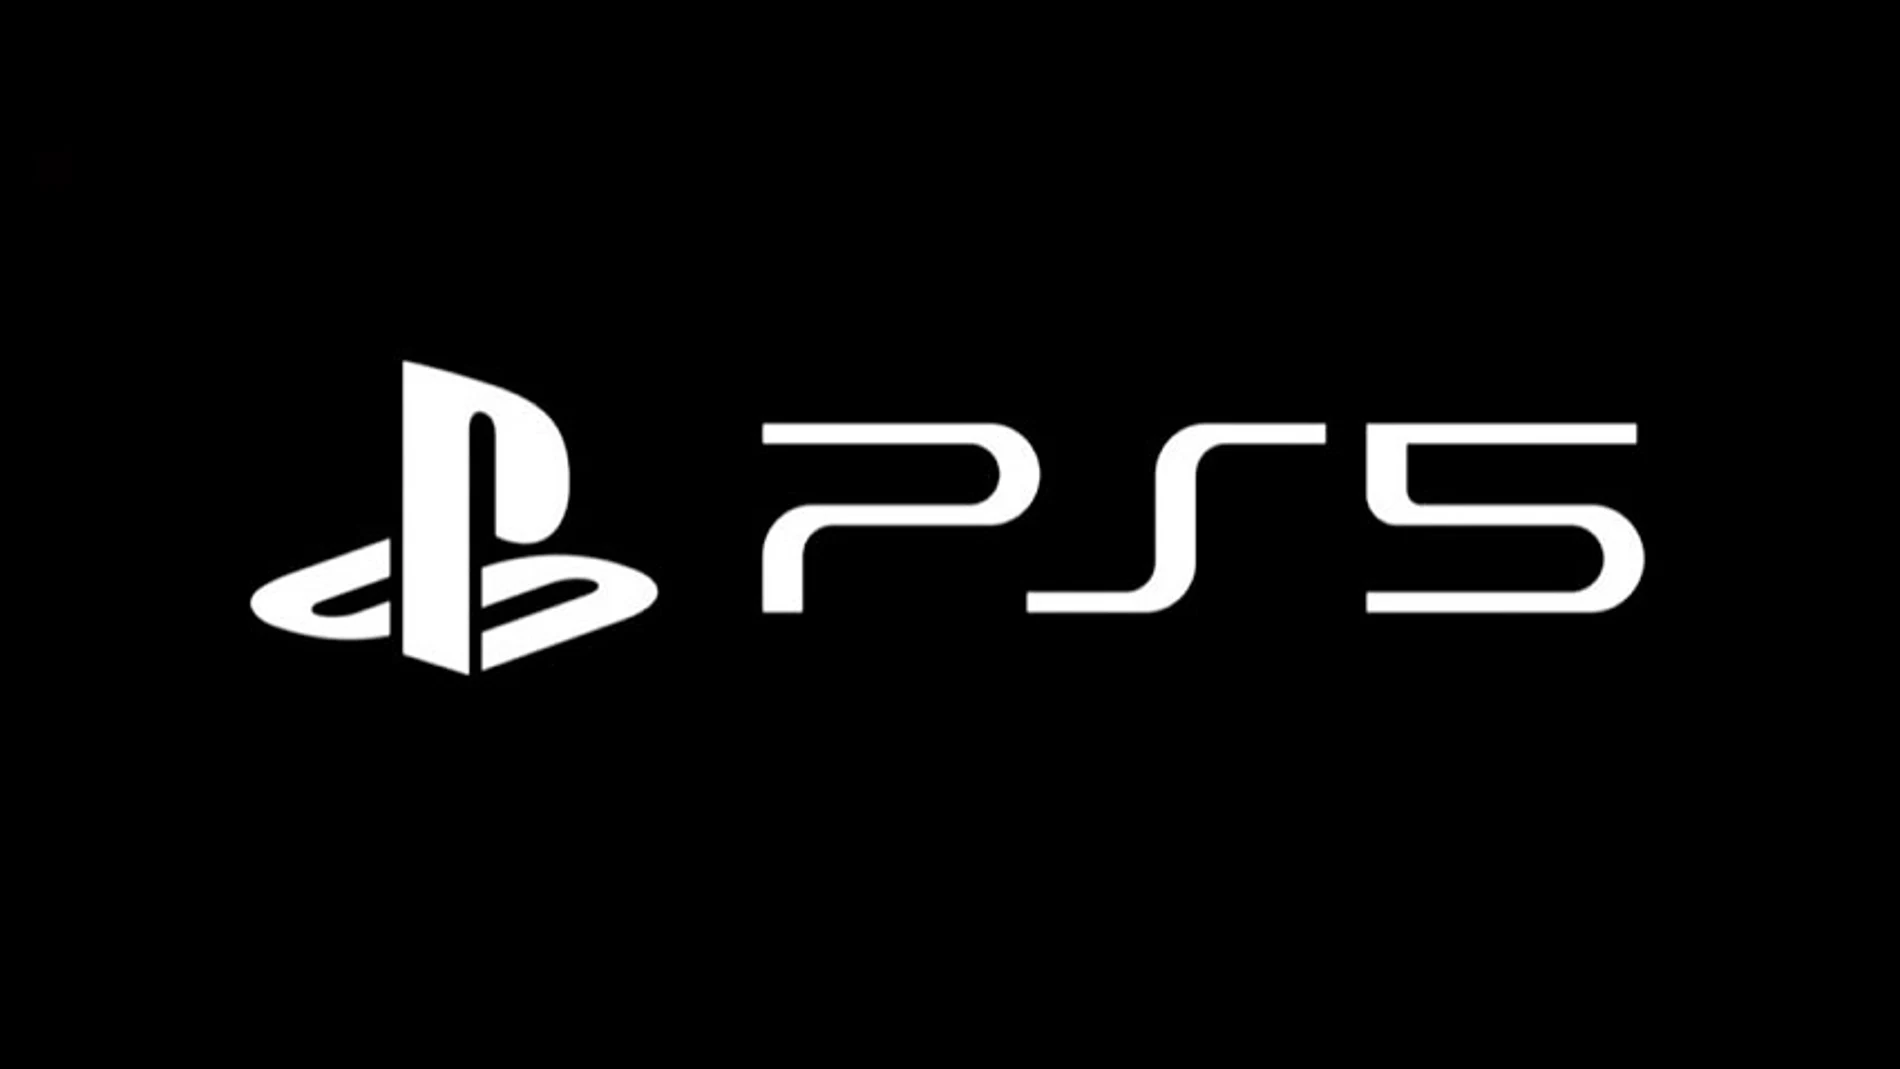 El logotipo de PlayStation 5 revoluciona las redes sociales